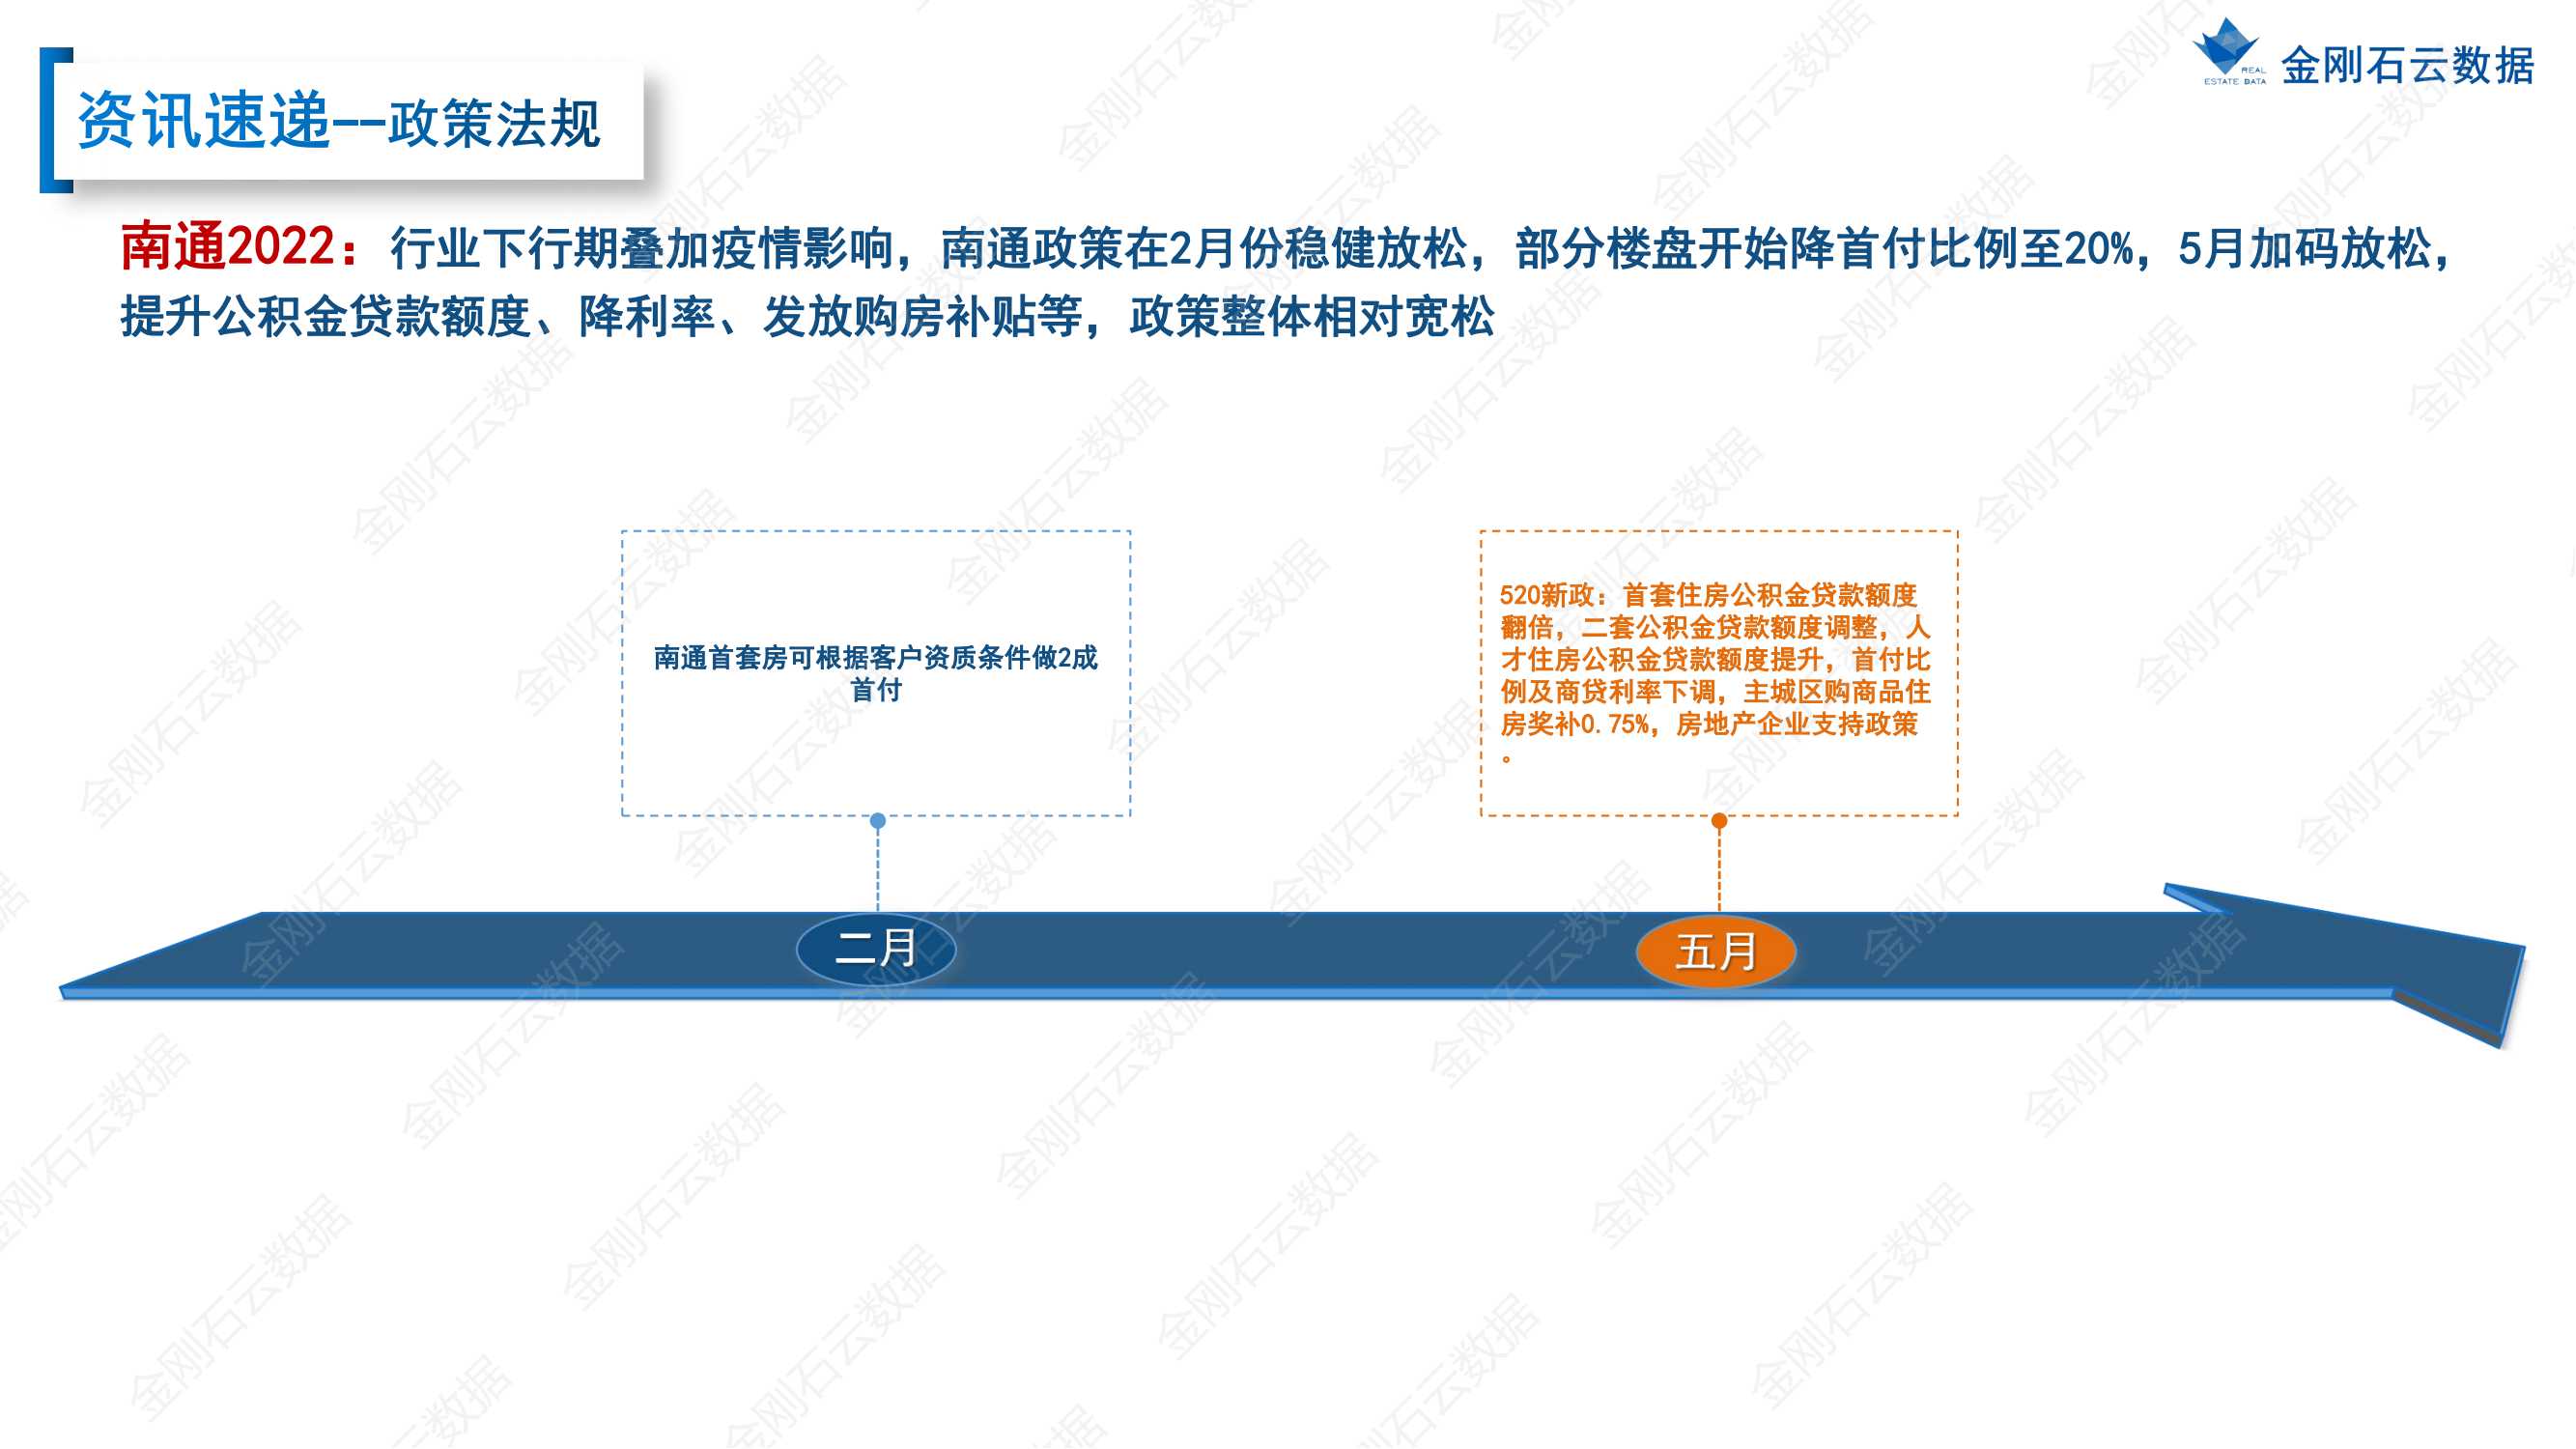 【江苏南通】2022年上半年度市场报告(图5)